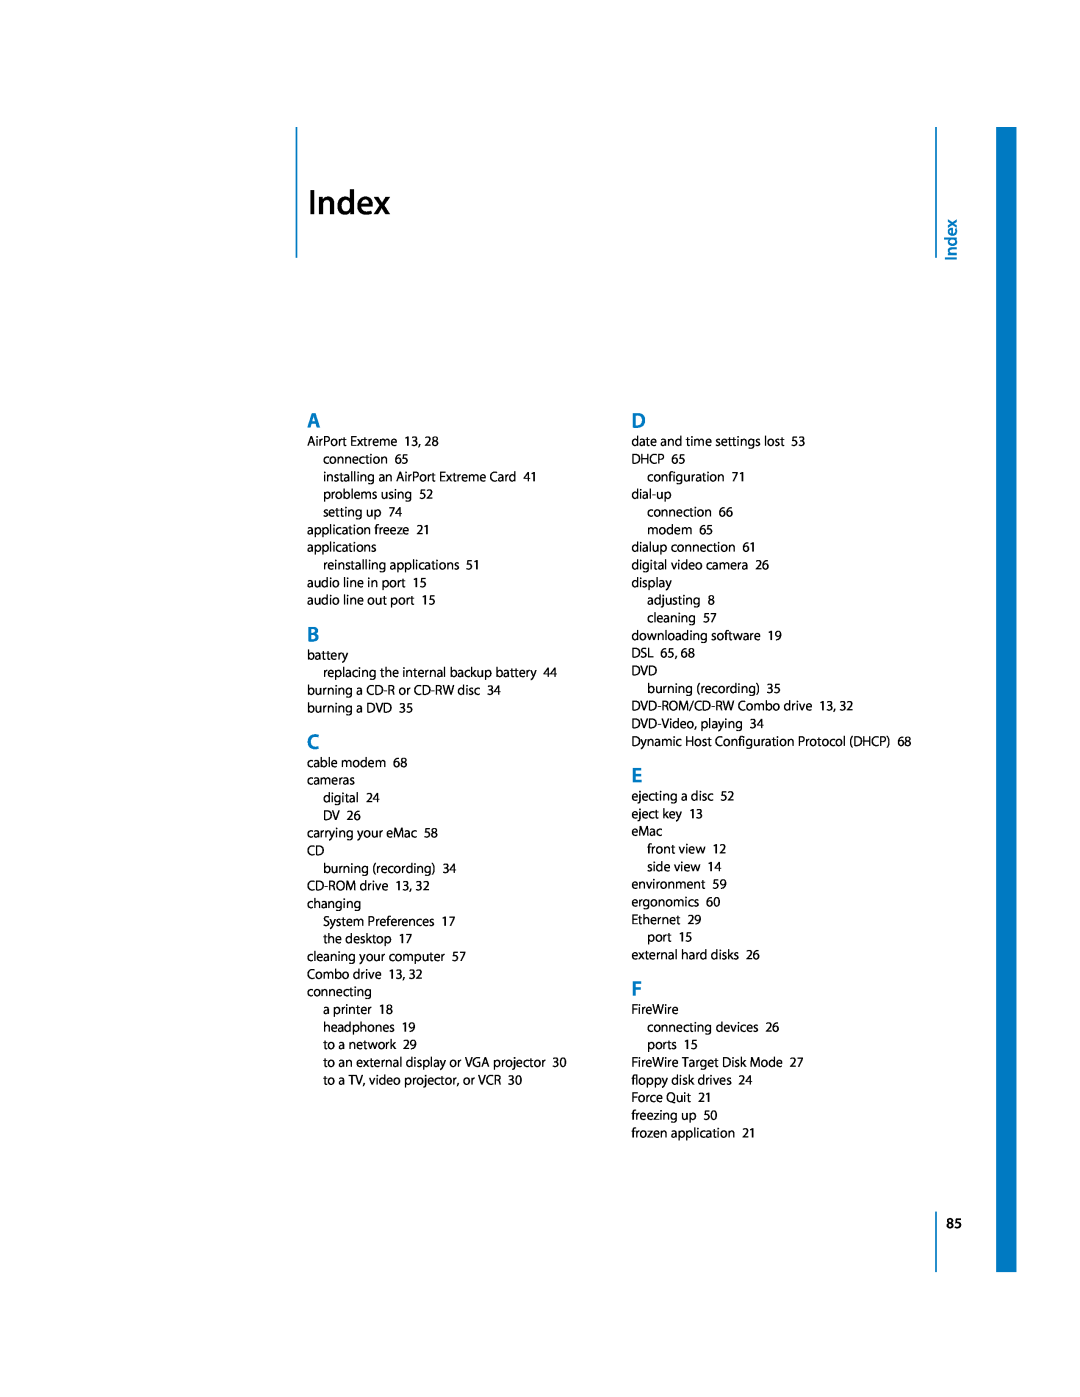 Apple EMac manual Index 